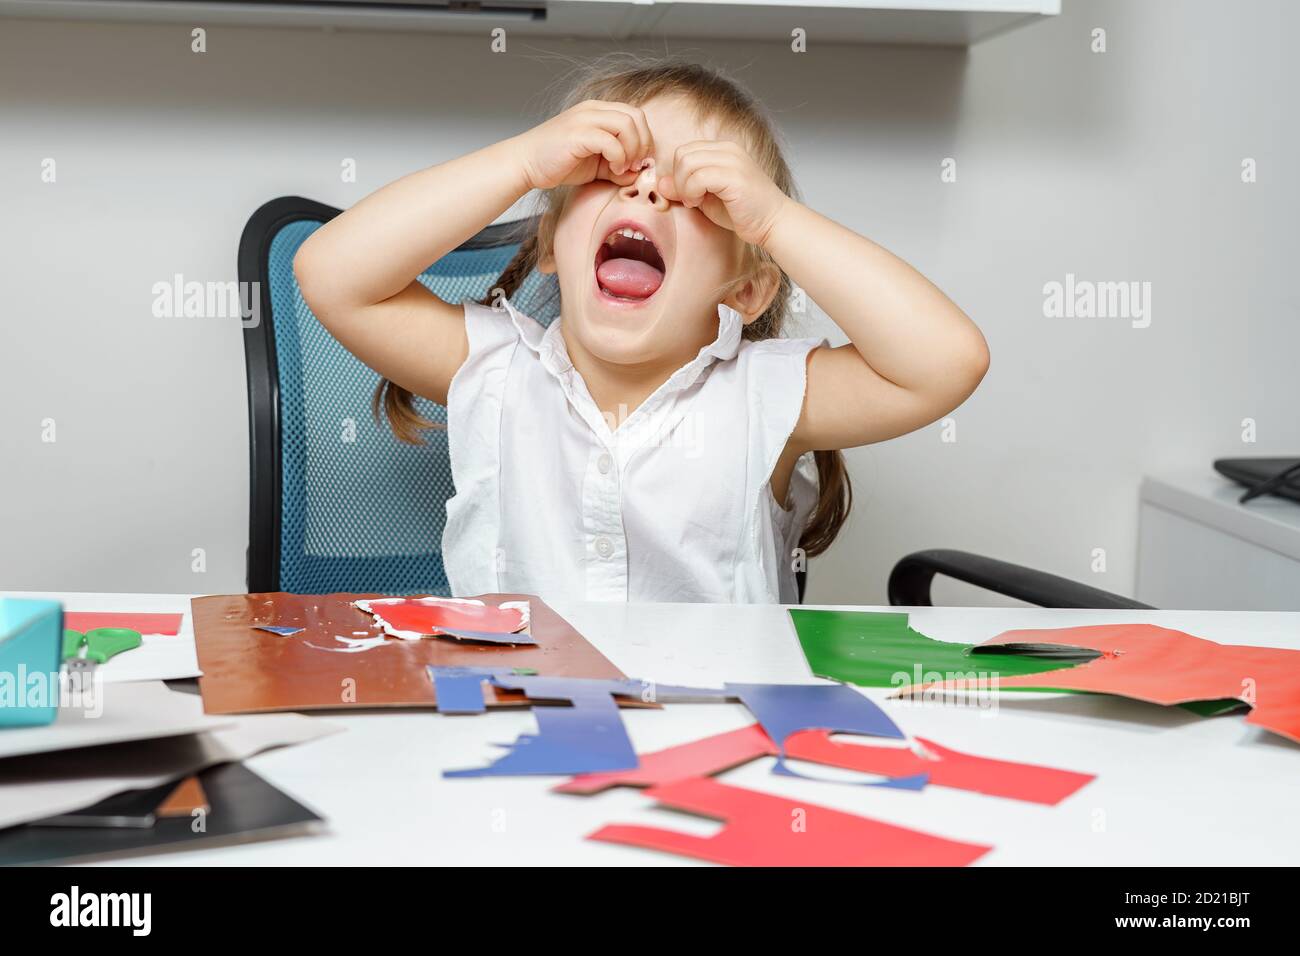 une petite fille pleure parce que l'artisanat en papier ne fonctionne pas. échecs d'enfance Banque D'Images